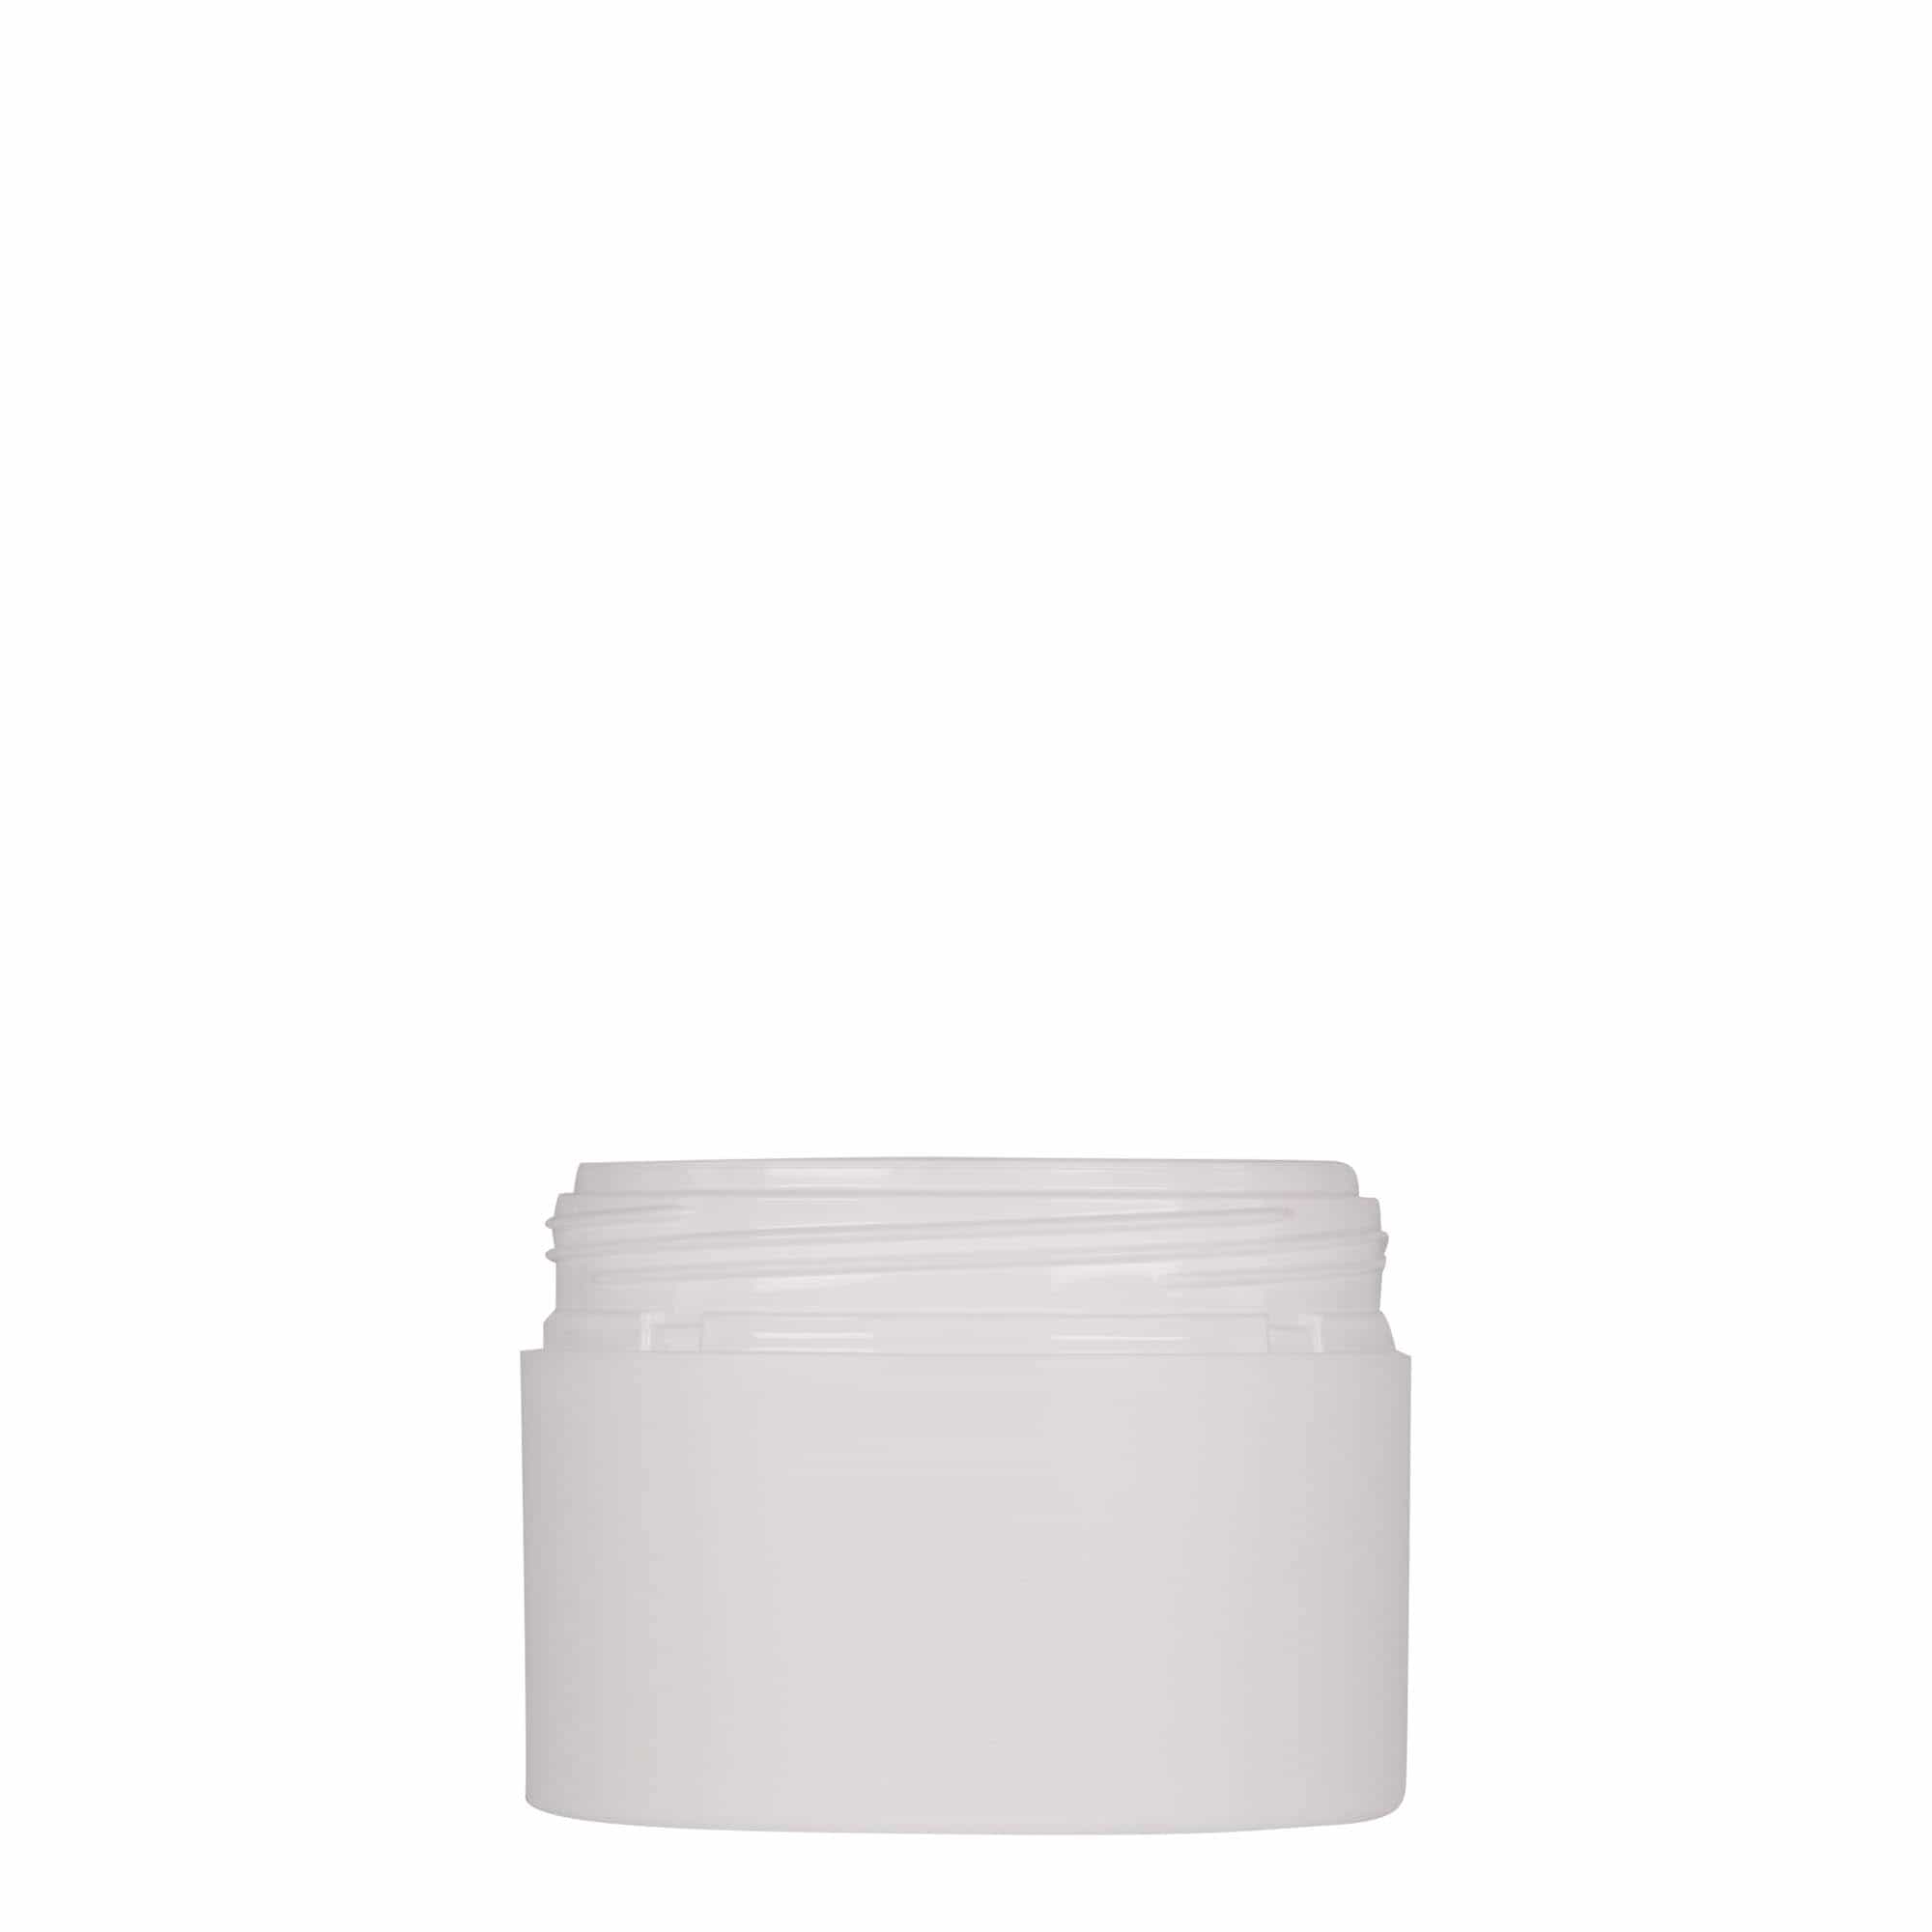 100 ml plastic jar 'Antonella', PP, white, closure: screw cap